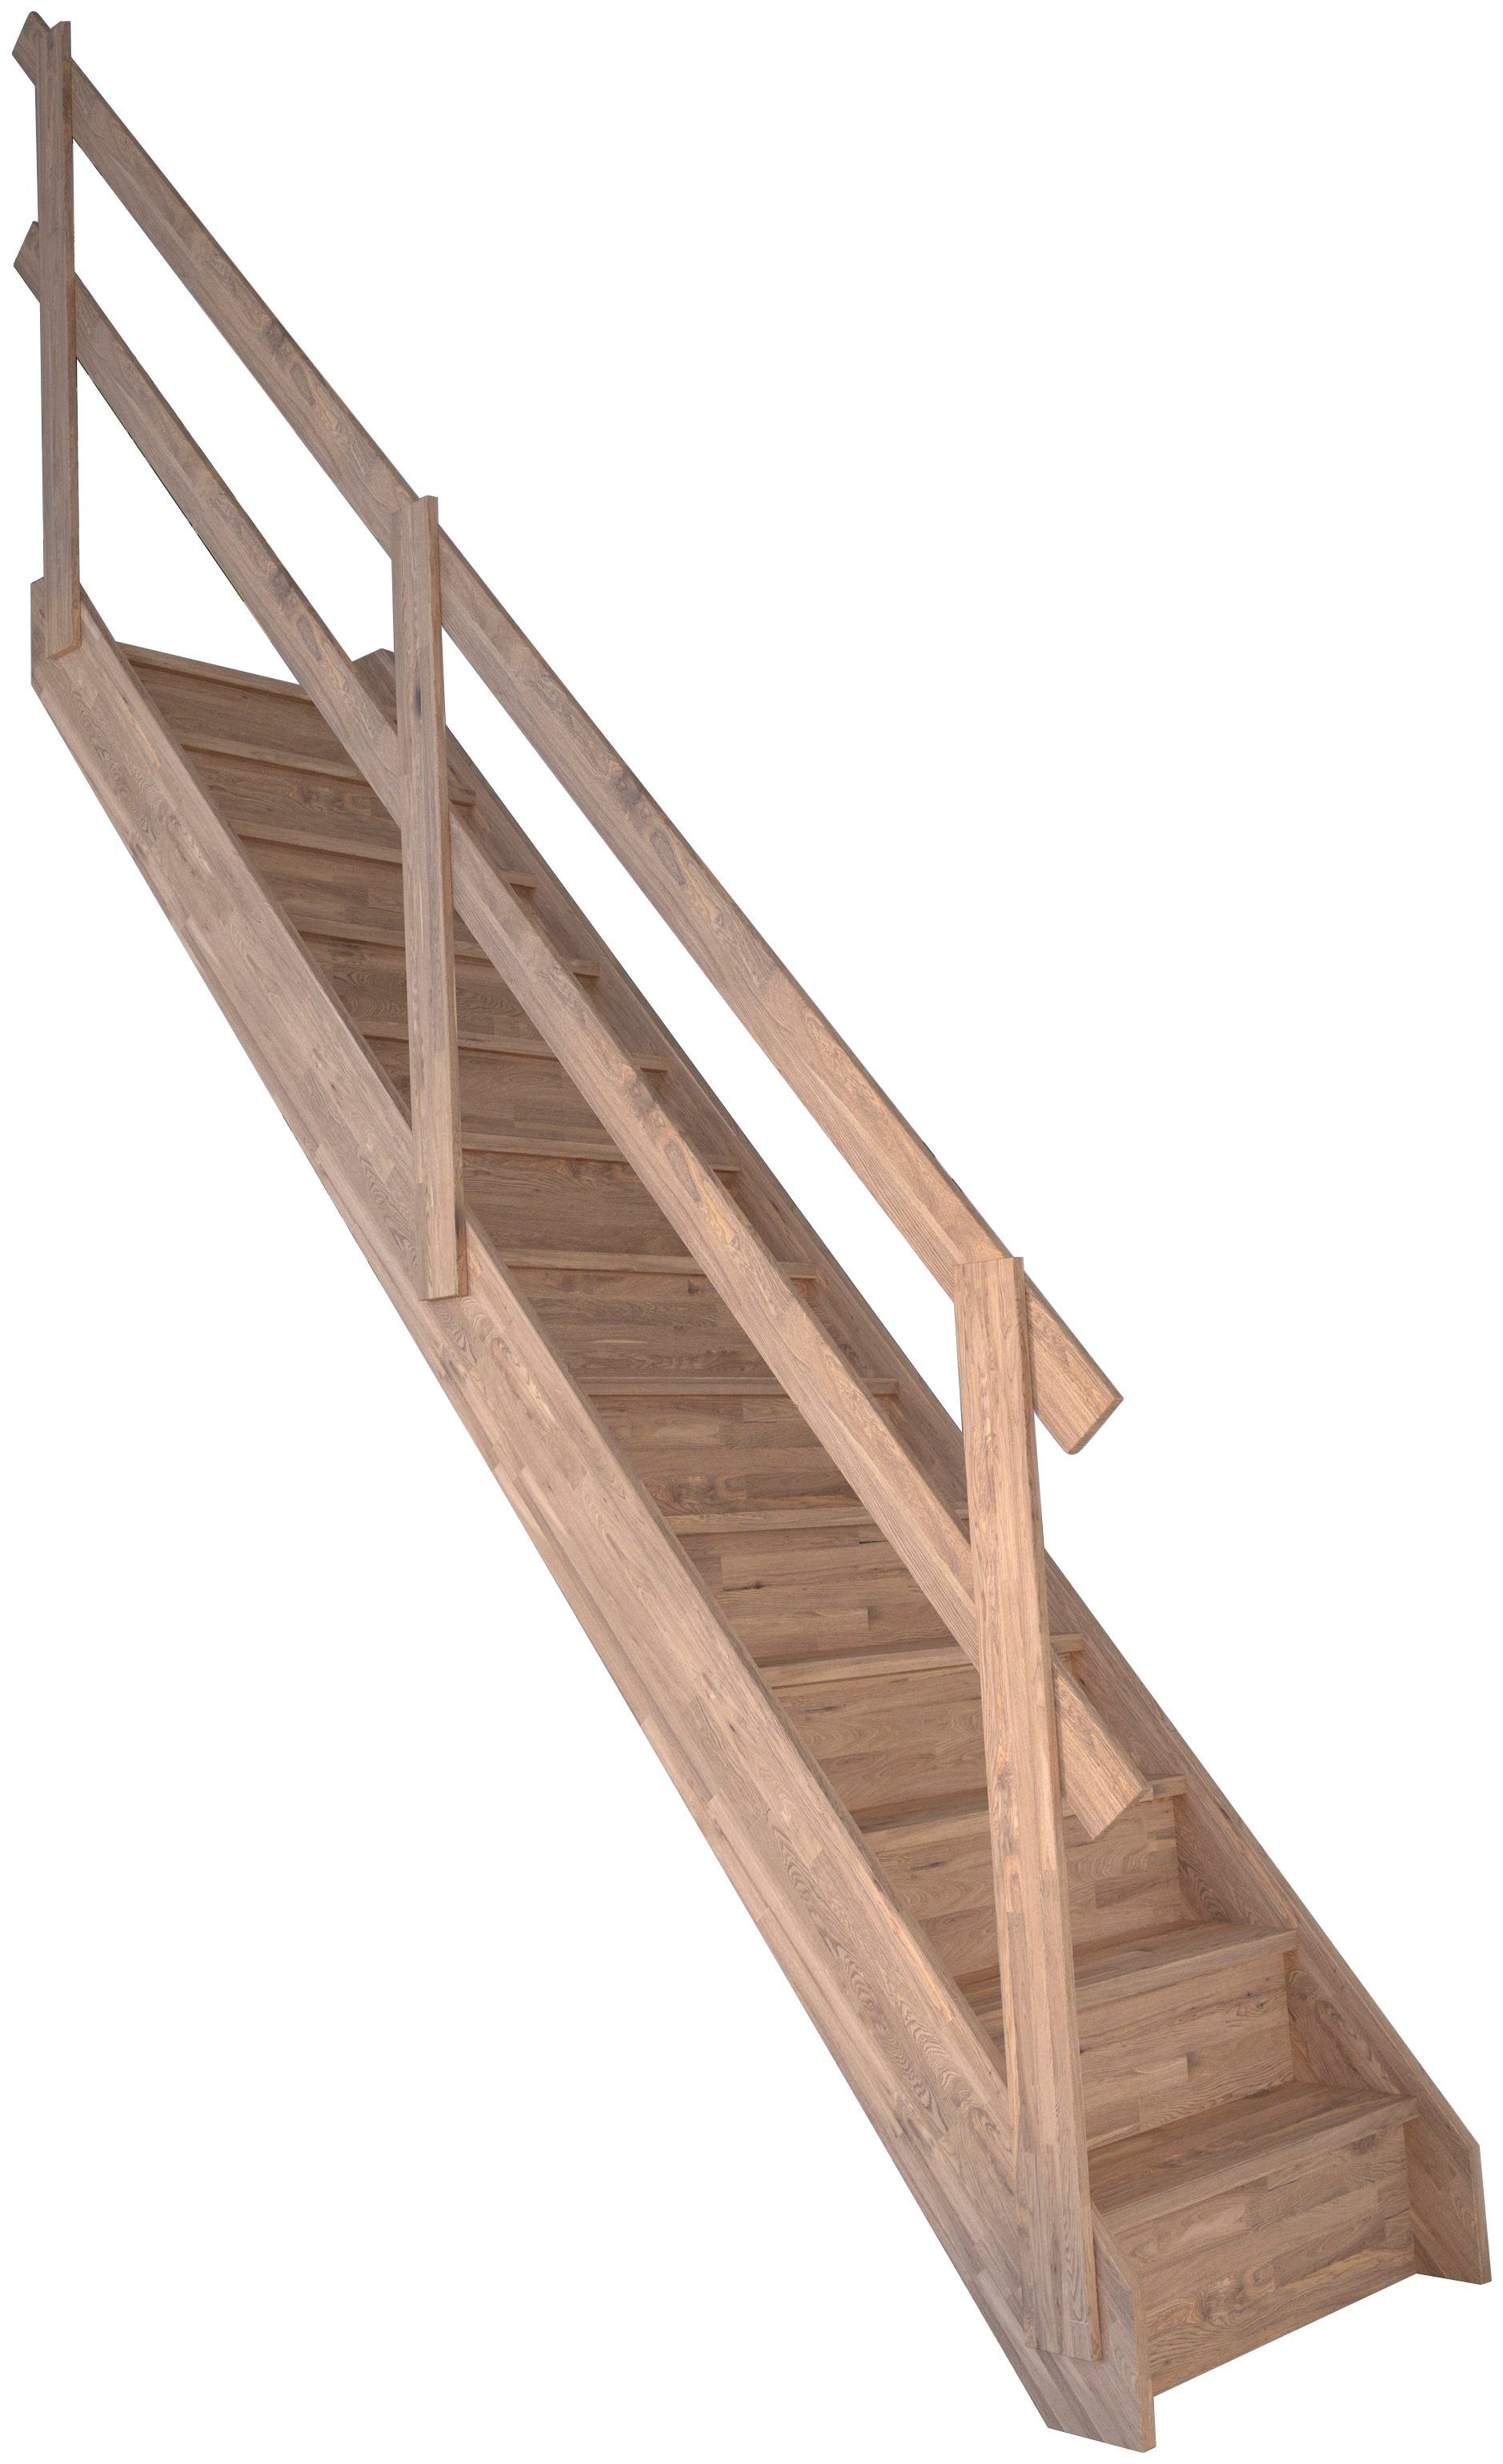 Starwood Raumspartreppe Massivholz Rhodos, Holzgeländer, für Geschosshöhen bis 300 cm, Stufen geschlossen, Durchgehende Wangenteile